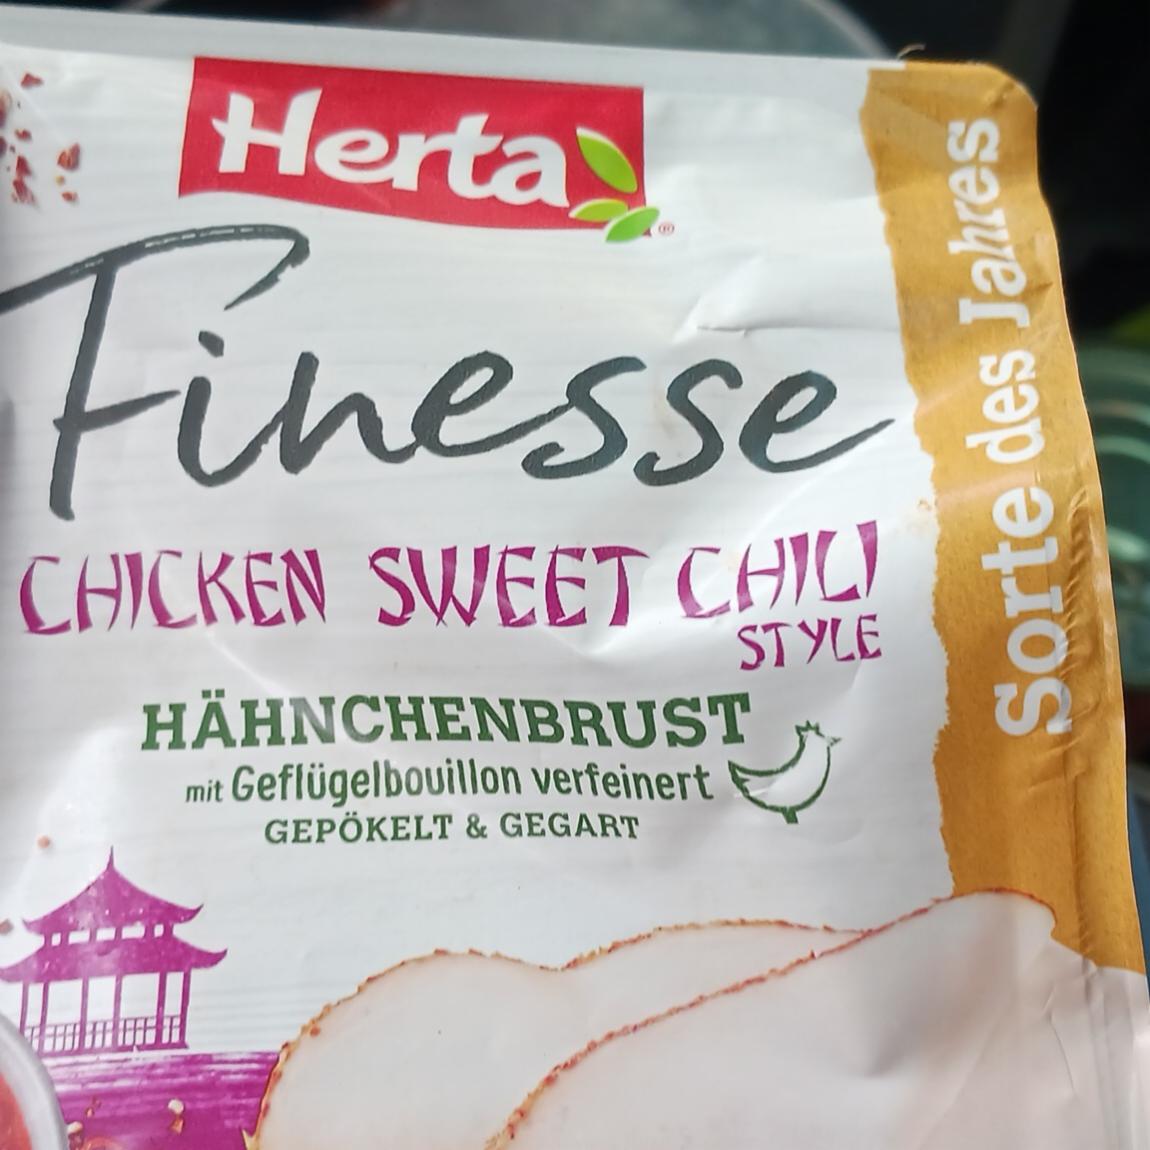 Fotografie - Hähnchenbrust Chicken Sweet Chili Style Herta